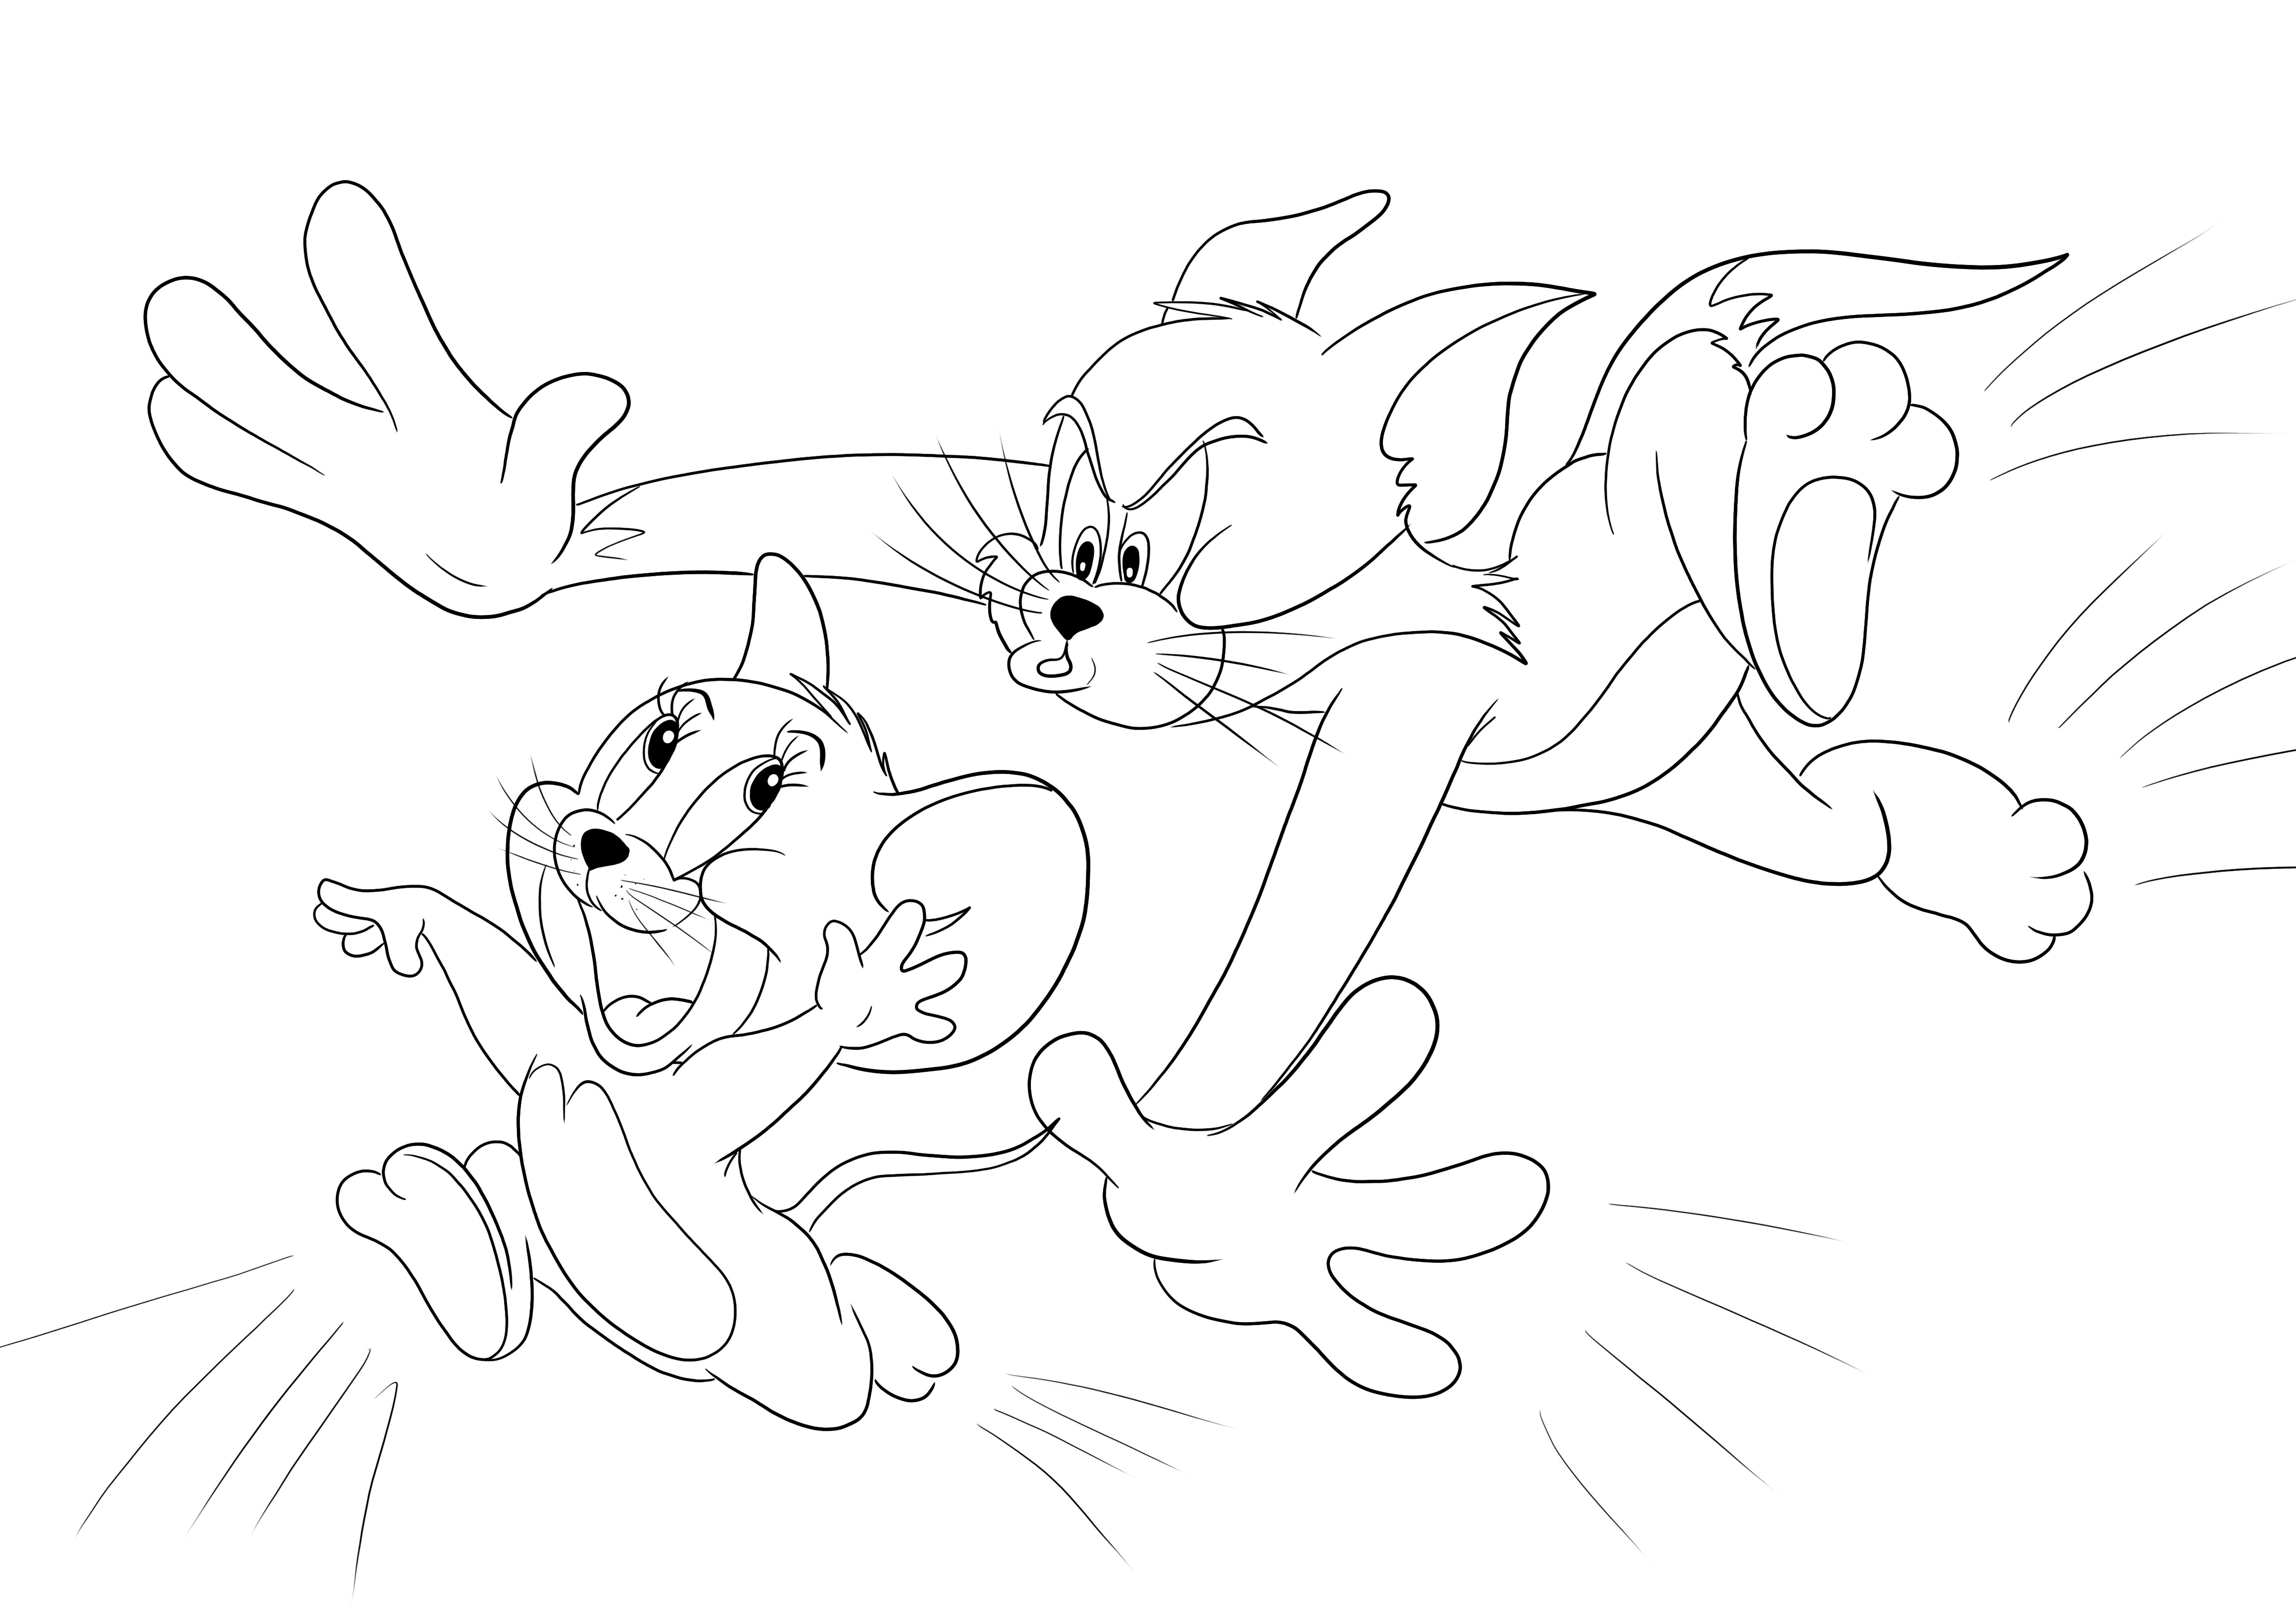 Tom mengejar Jerry mewarnai untuk bersenang-senang dan mencetak atau mengunduh secara gratis